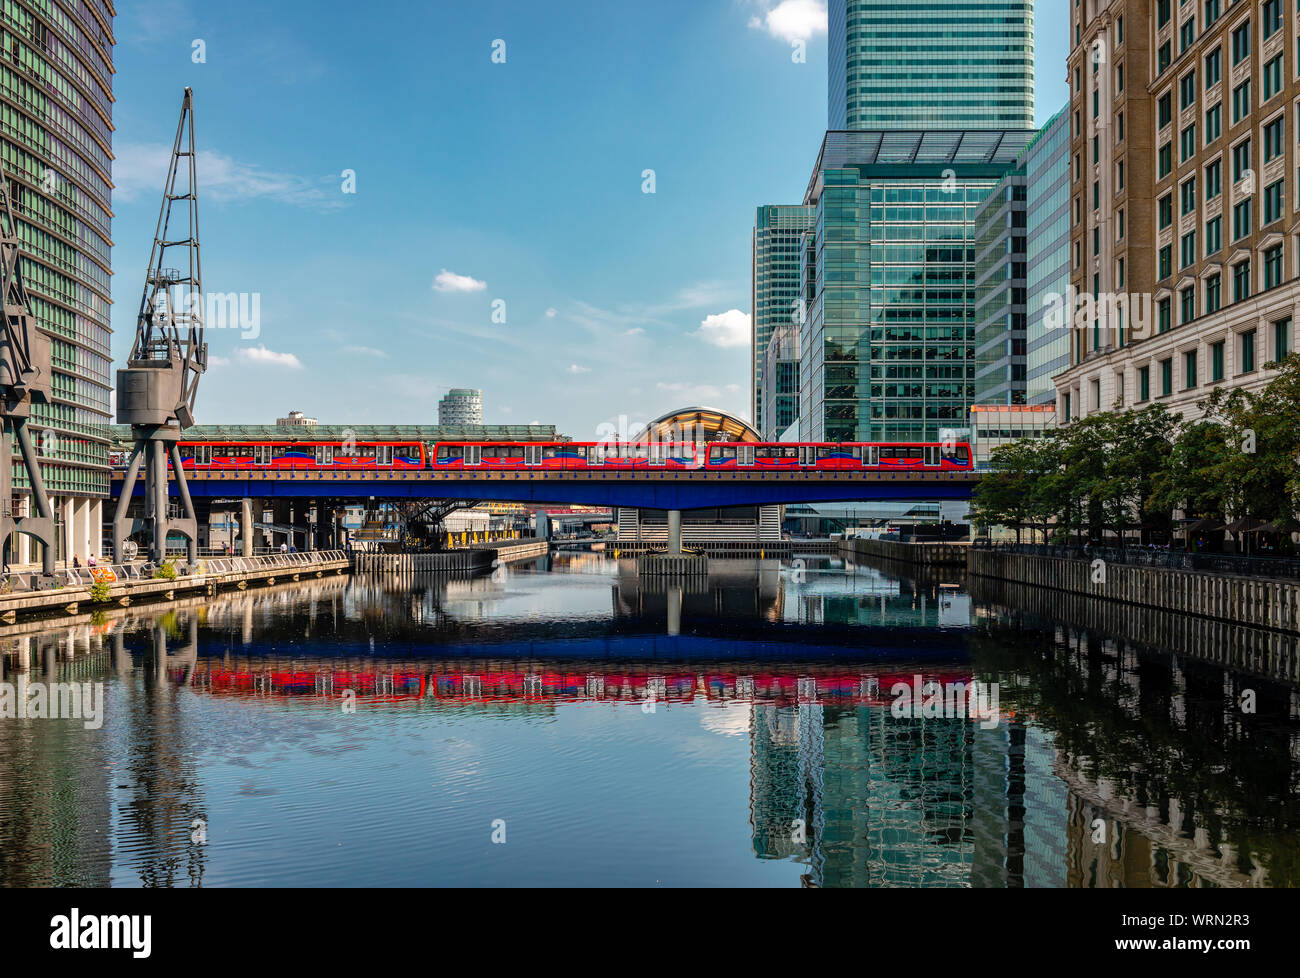 London/Großbritannien - 27. August 2019: Die Docklands Light Railway spiegelt sich auf den Gewässern des Nordens Dock, in Canary Wharf Entwicklung. Stockfoto